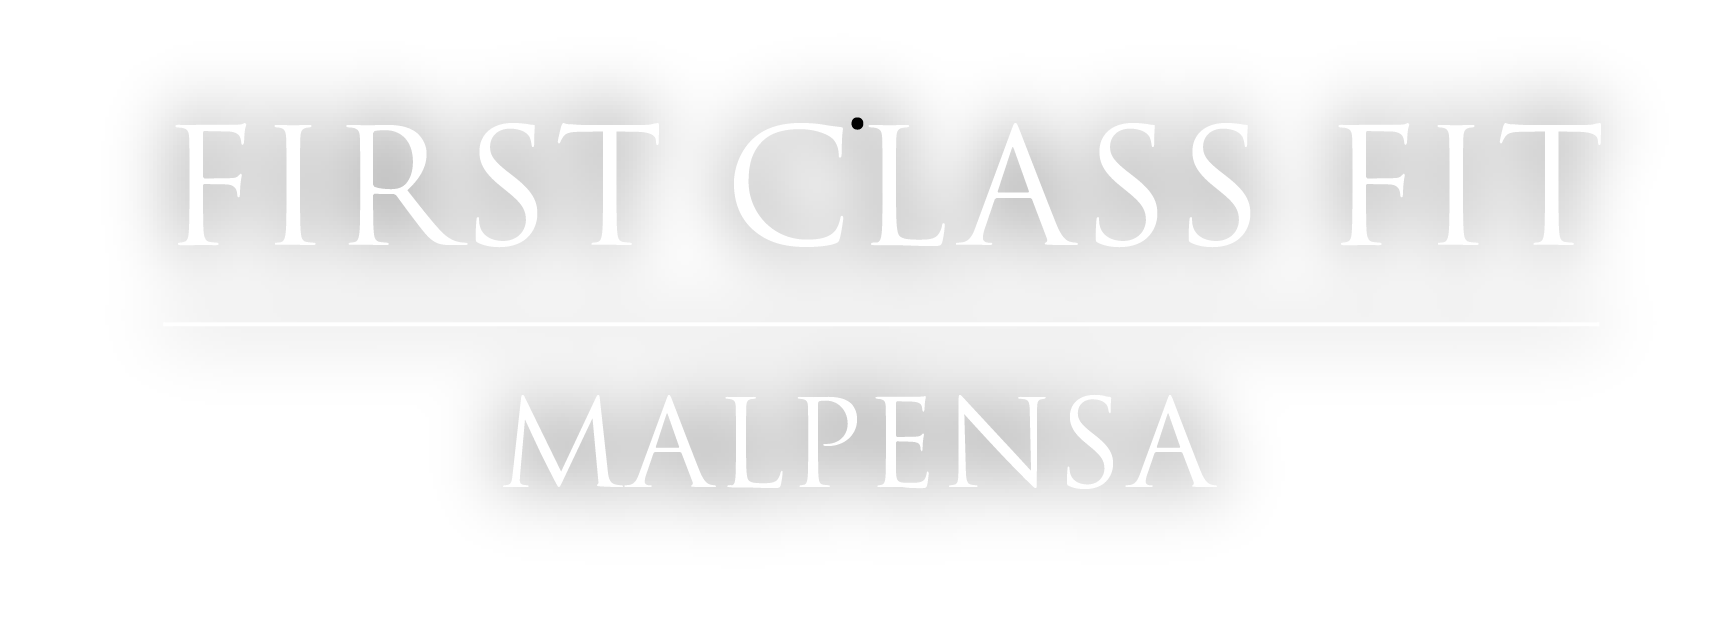 FIRST CLASS FIT MALPENSA